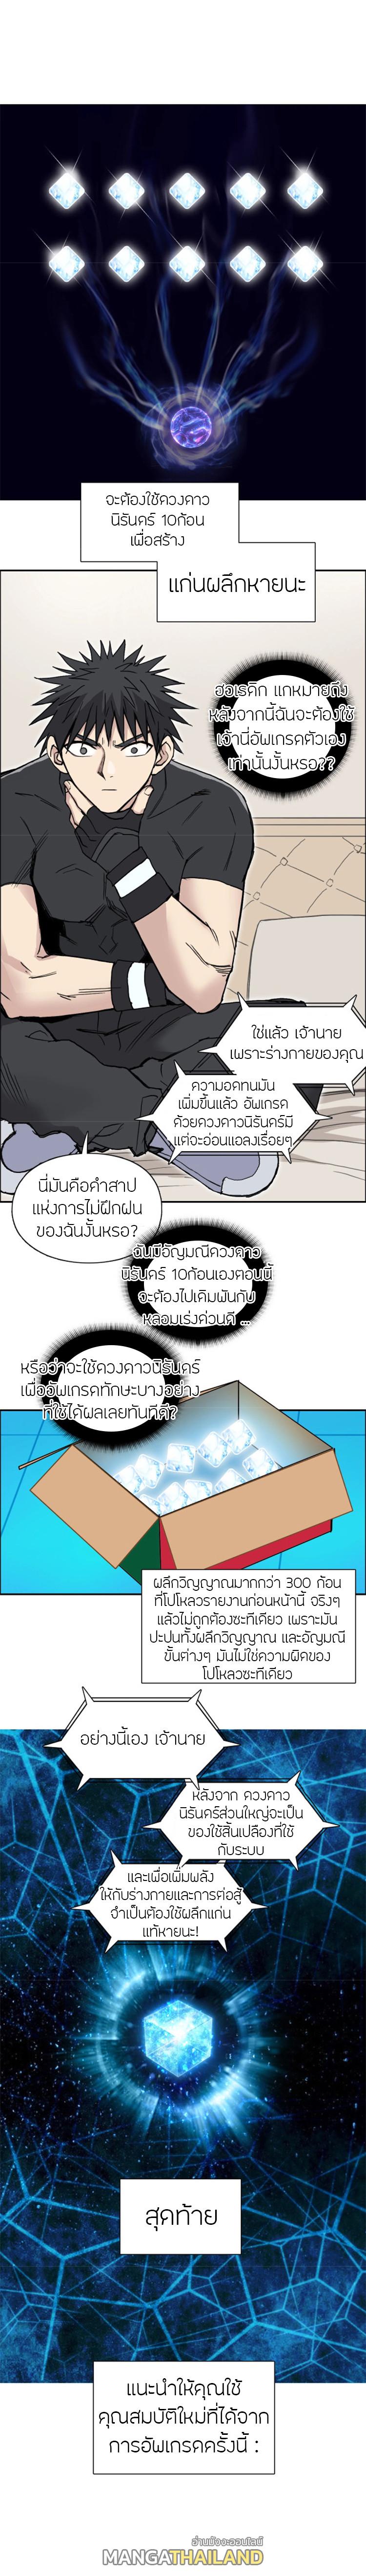 Super Cube ตอนที่ 239 แปลไทย รูปที่ 18